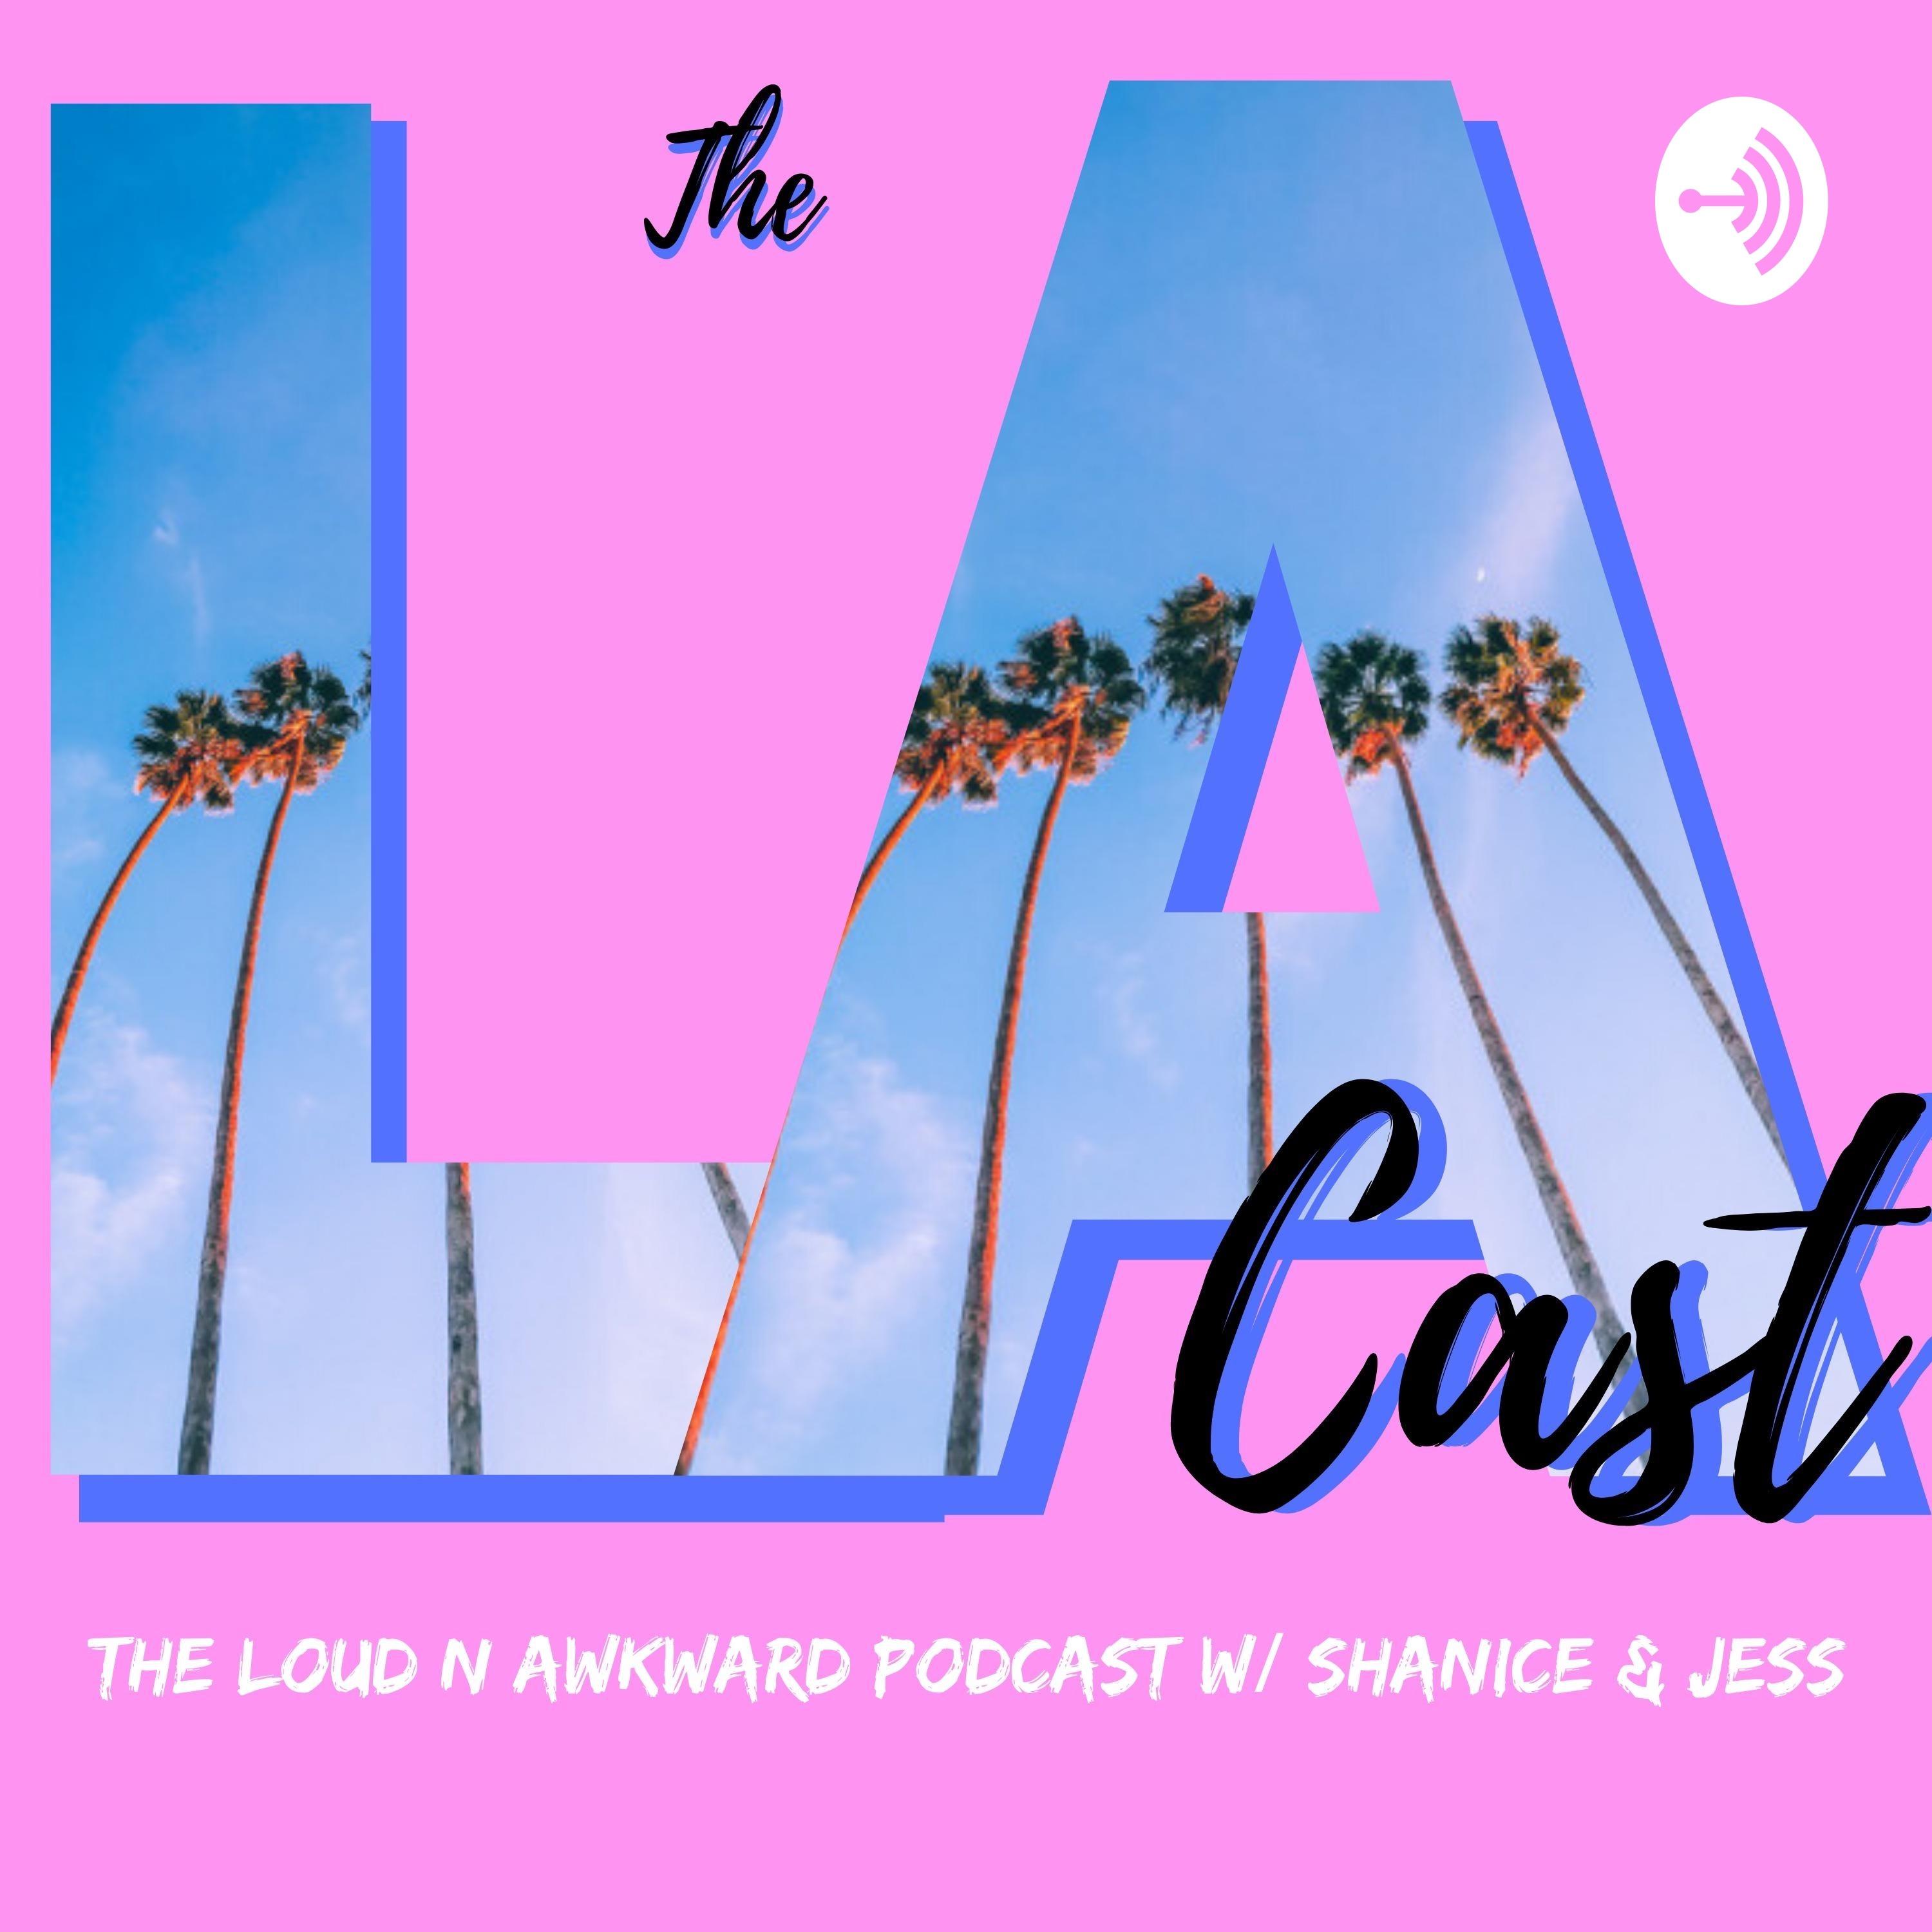 The LA Cast